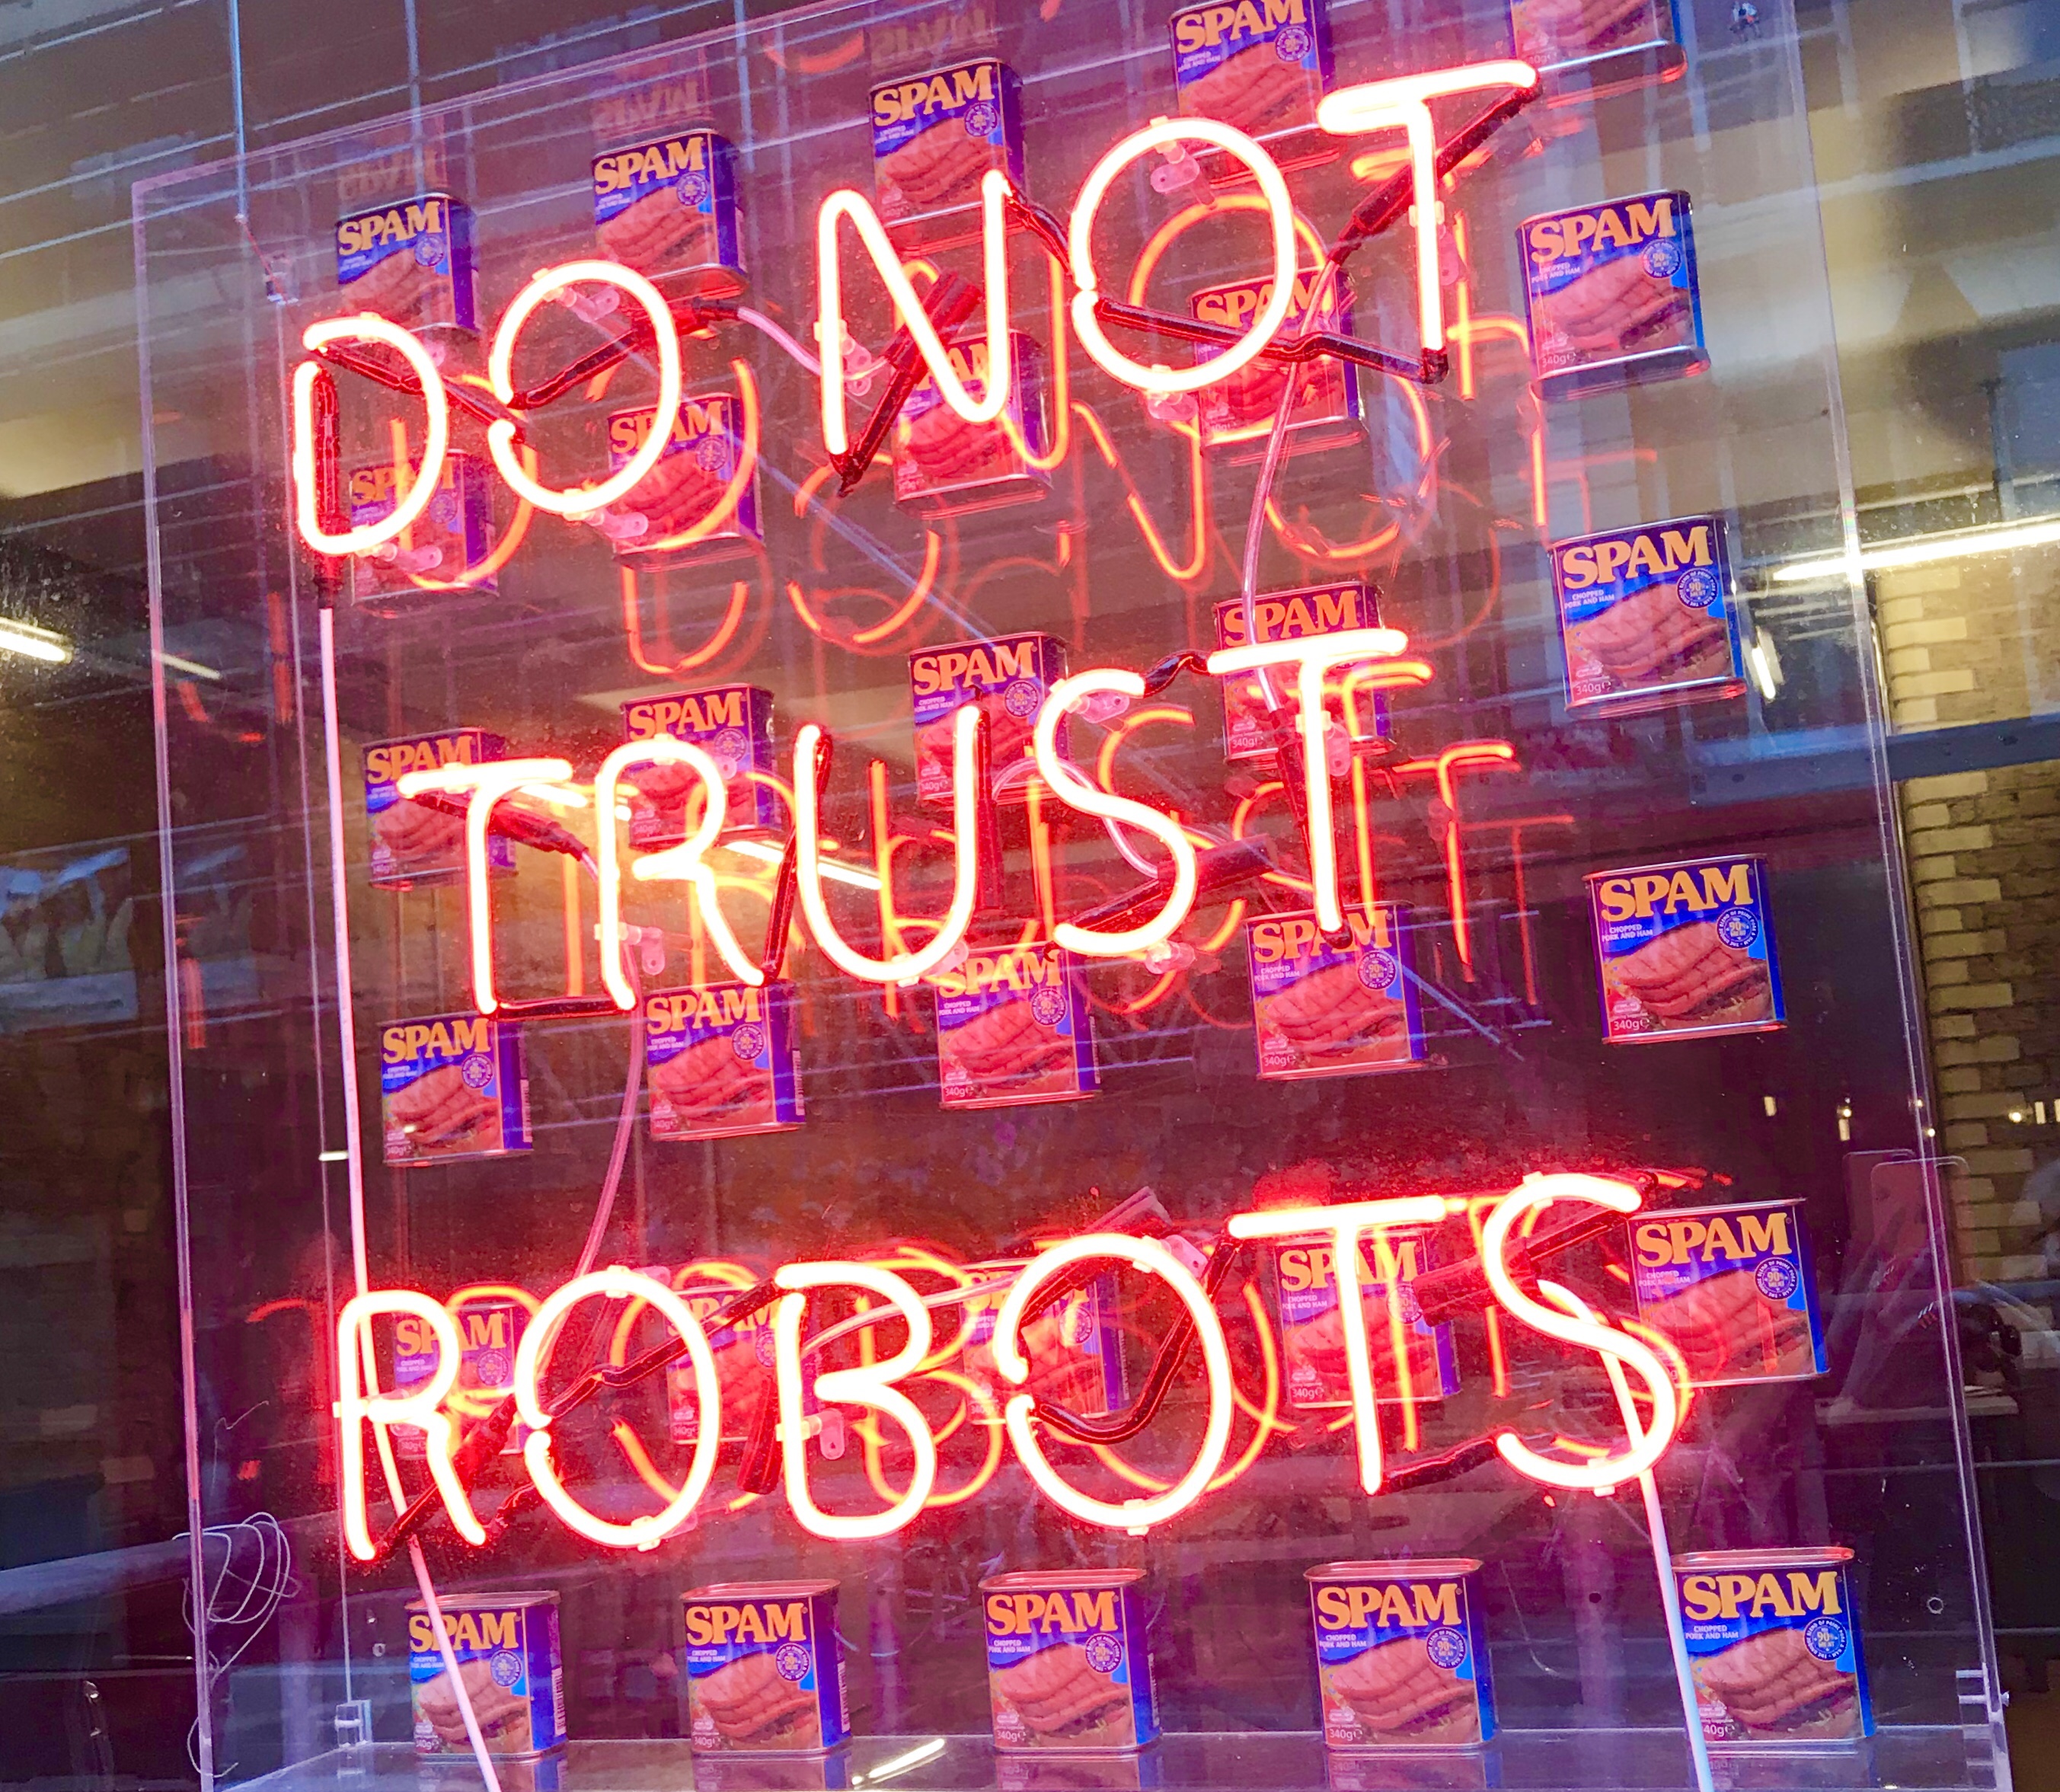 Do not trust robots